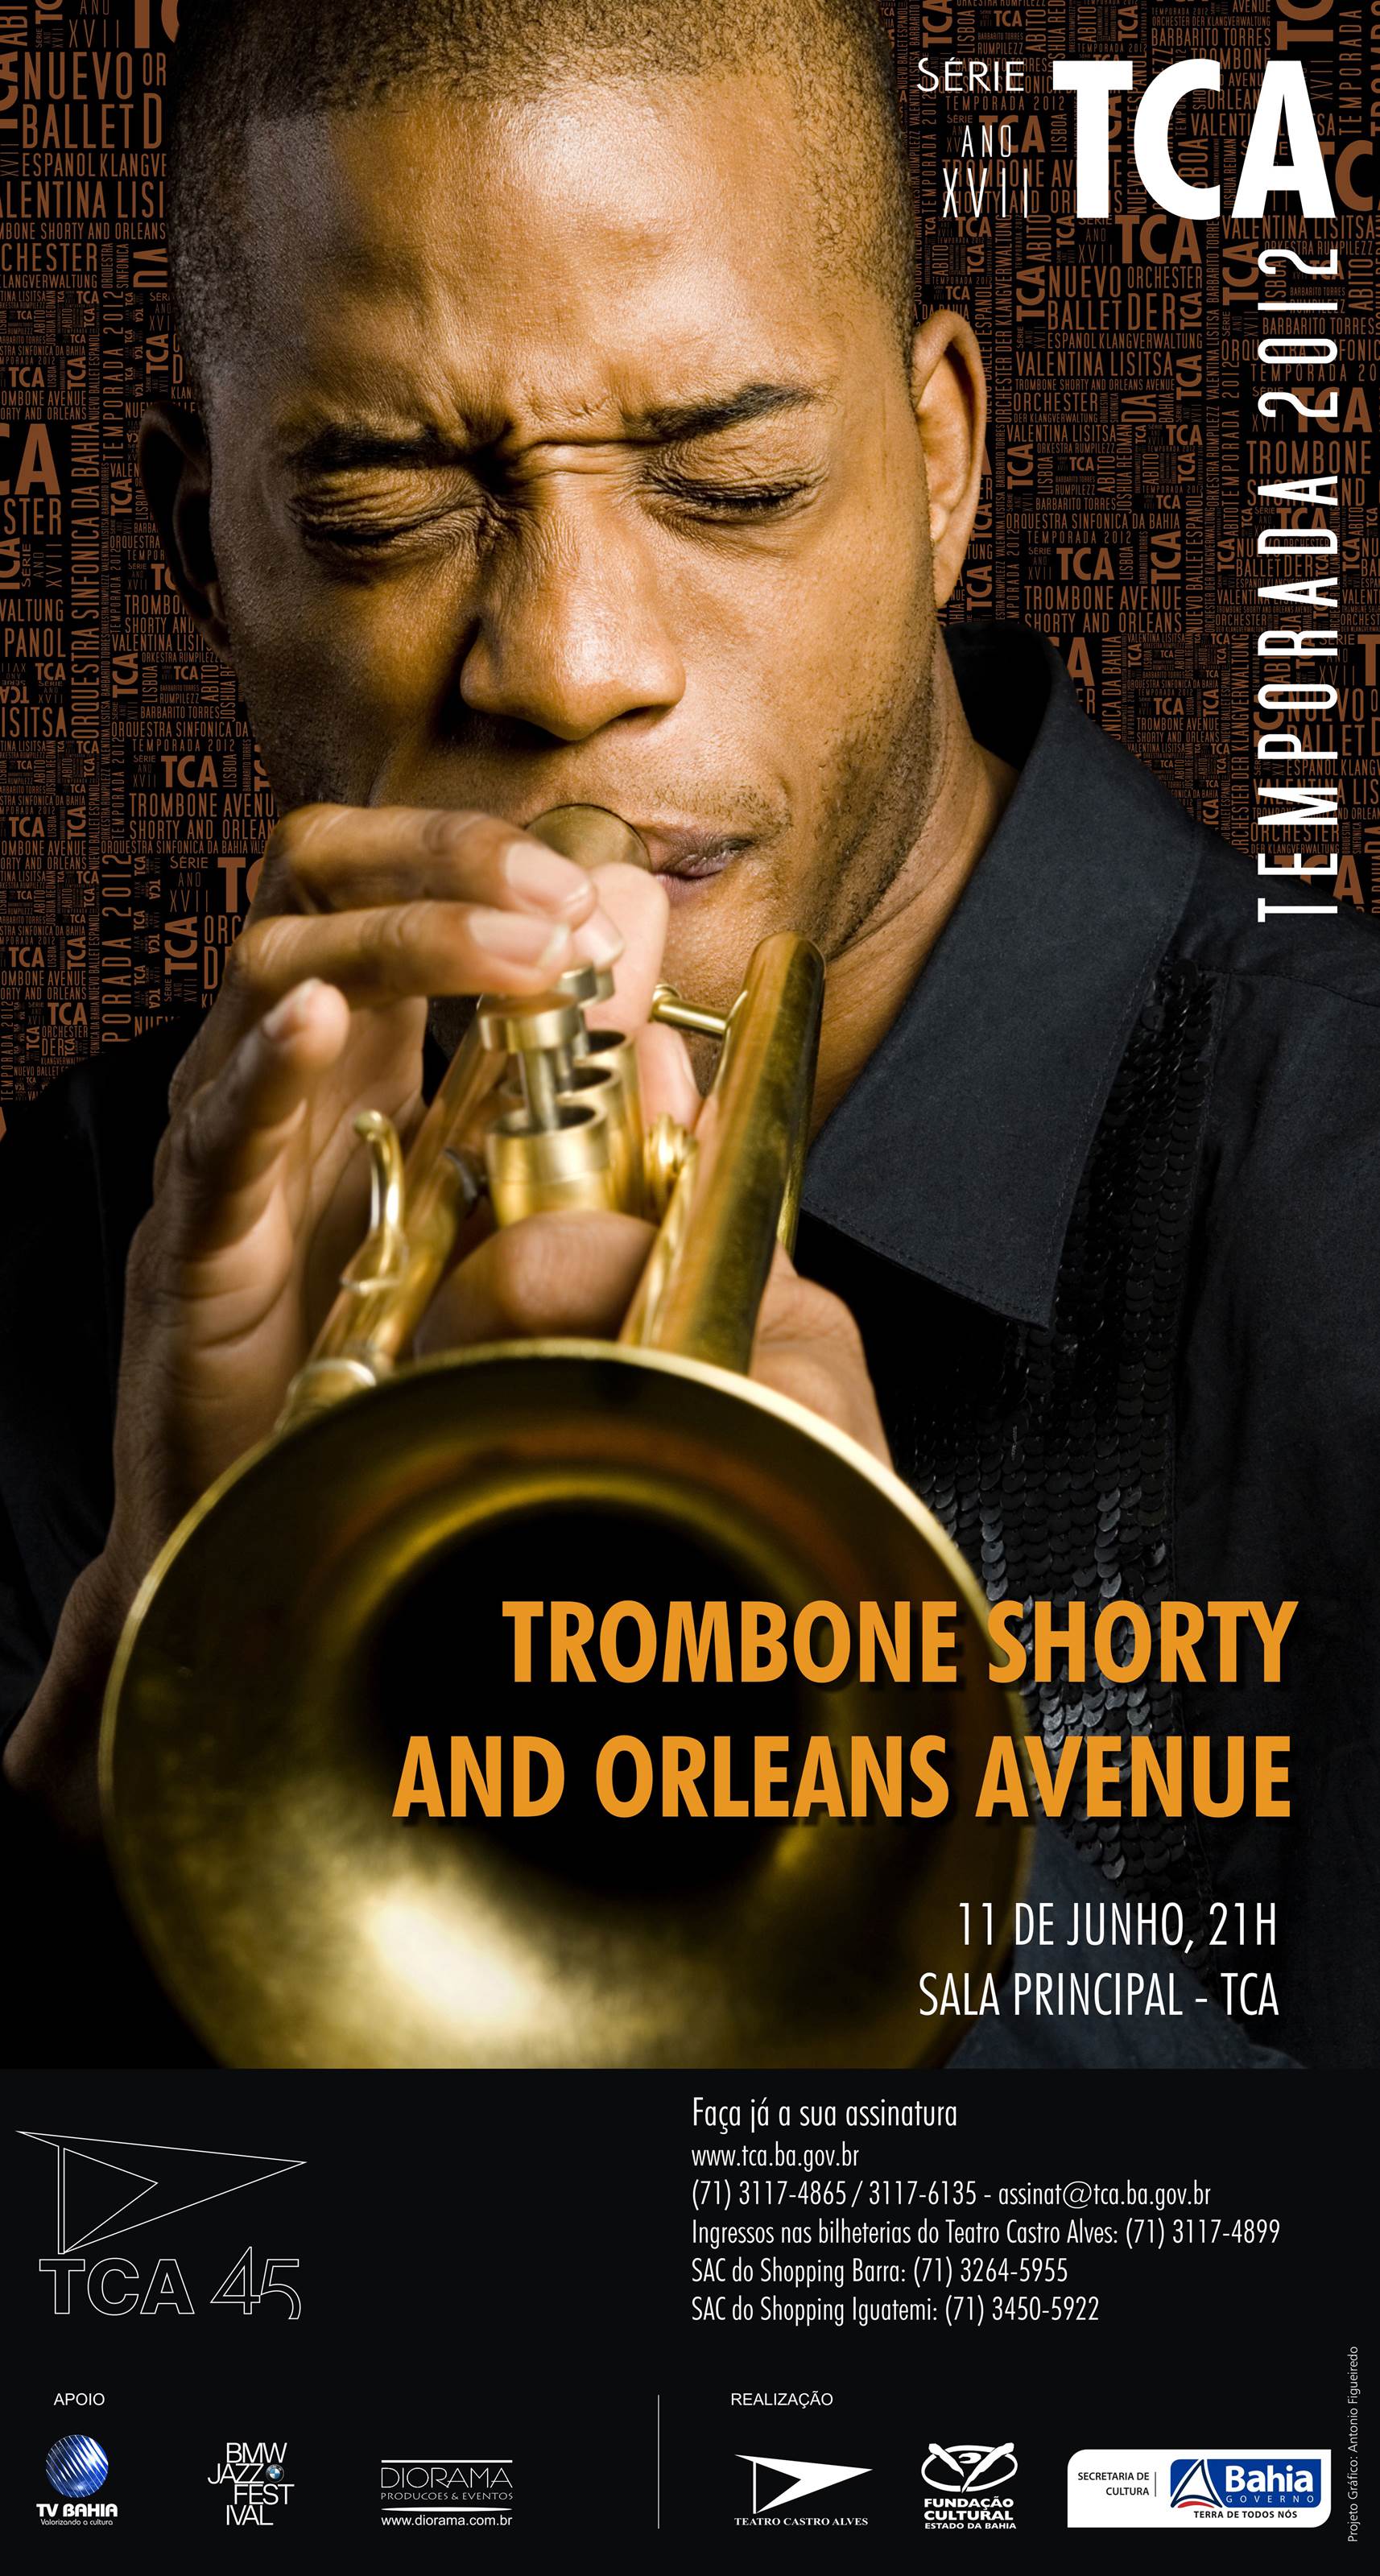 Mostra TCA EM CARTAZ_Trombone Shorty_SÉRIE TCA 2012 - Por Antonio Figueiredo